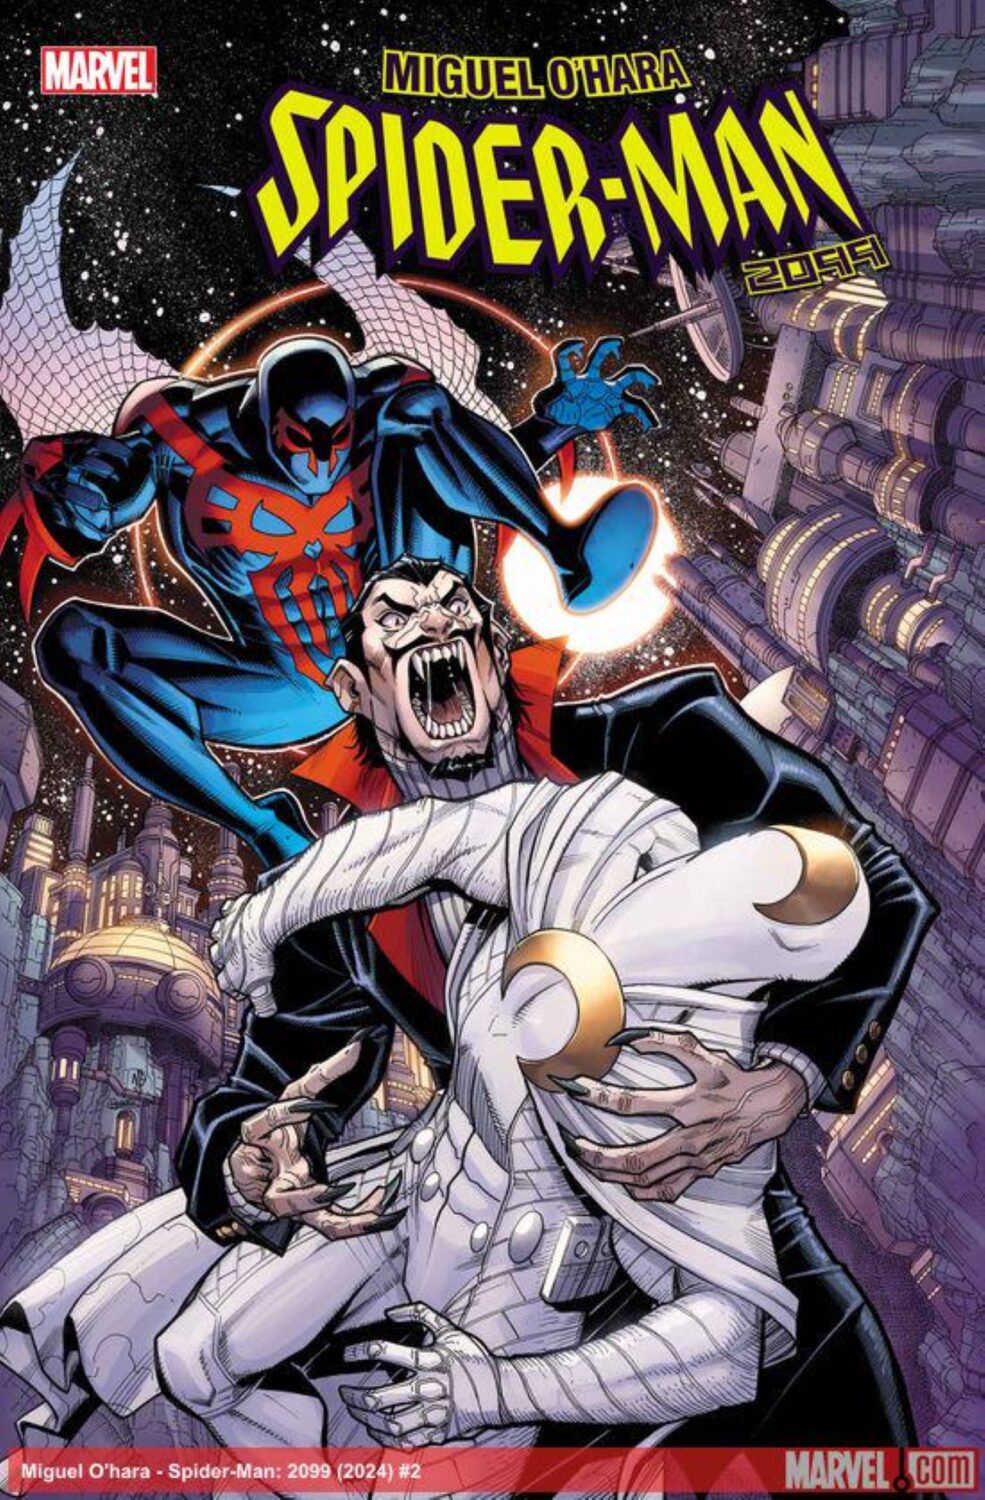 Marvel, Marvel Comics, Spider-Man 2099, Miguel O'hara